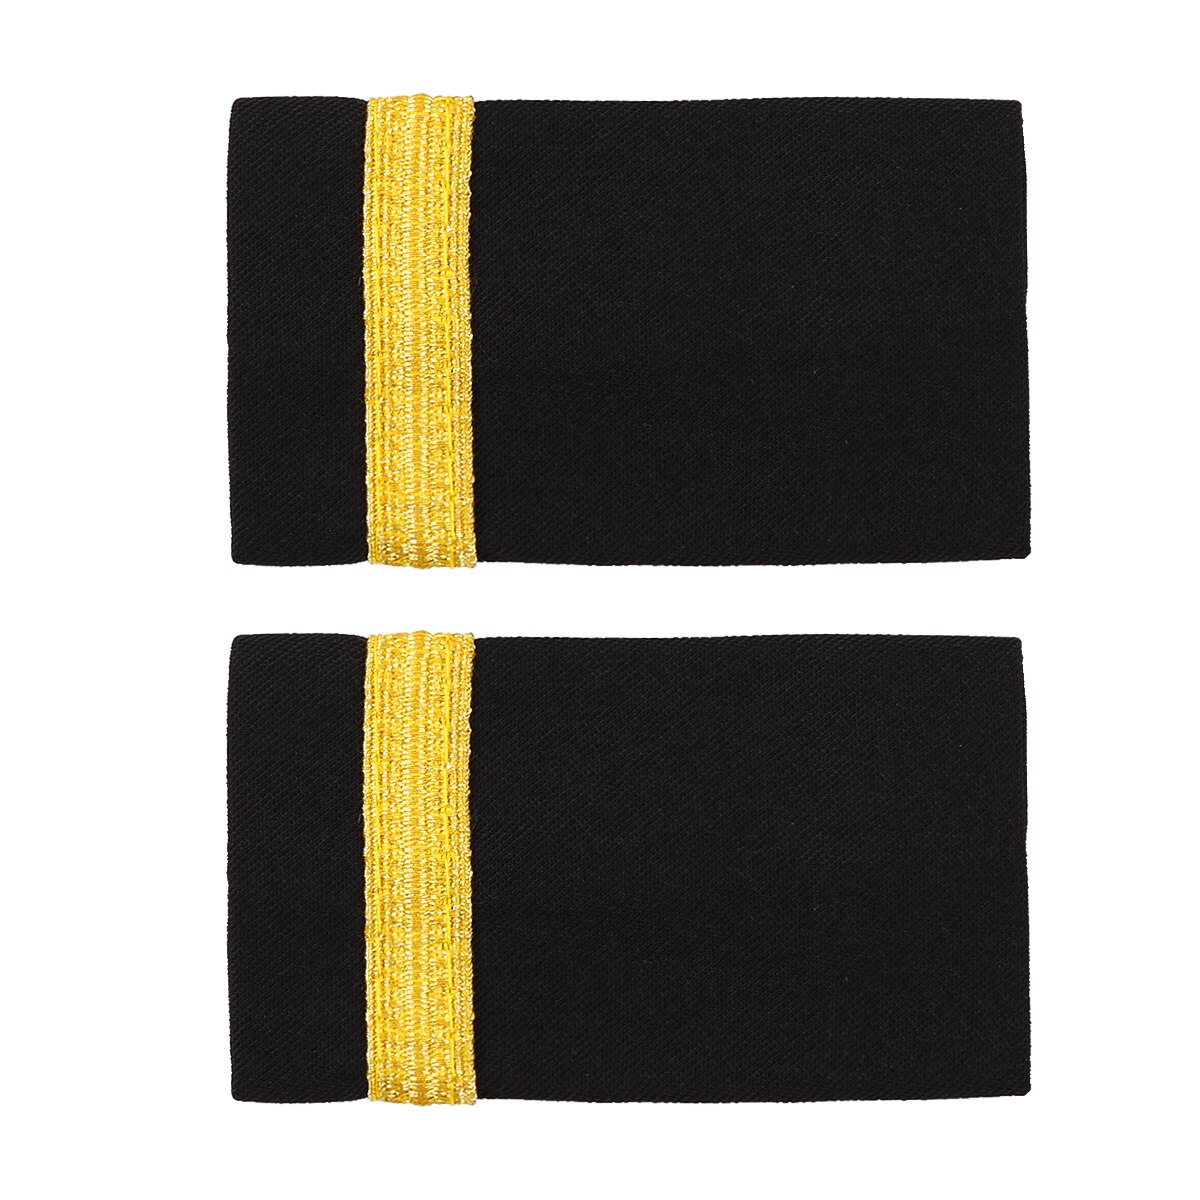 1 paar Traditionellen Uniform Dekor Epauletten Professionelle Pilot Shirt Epauletten DIY Gold Streifen Schulter Bord Abzeichen für Kleidung: Schwarz Gold eins Bar